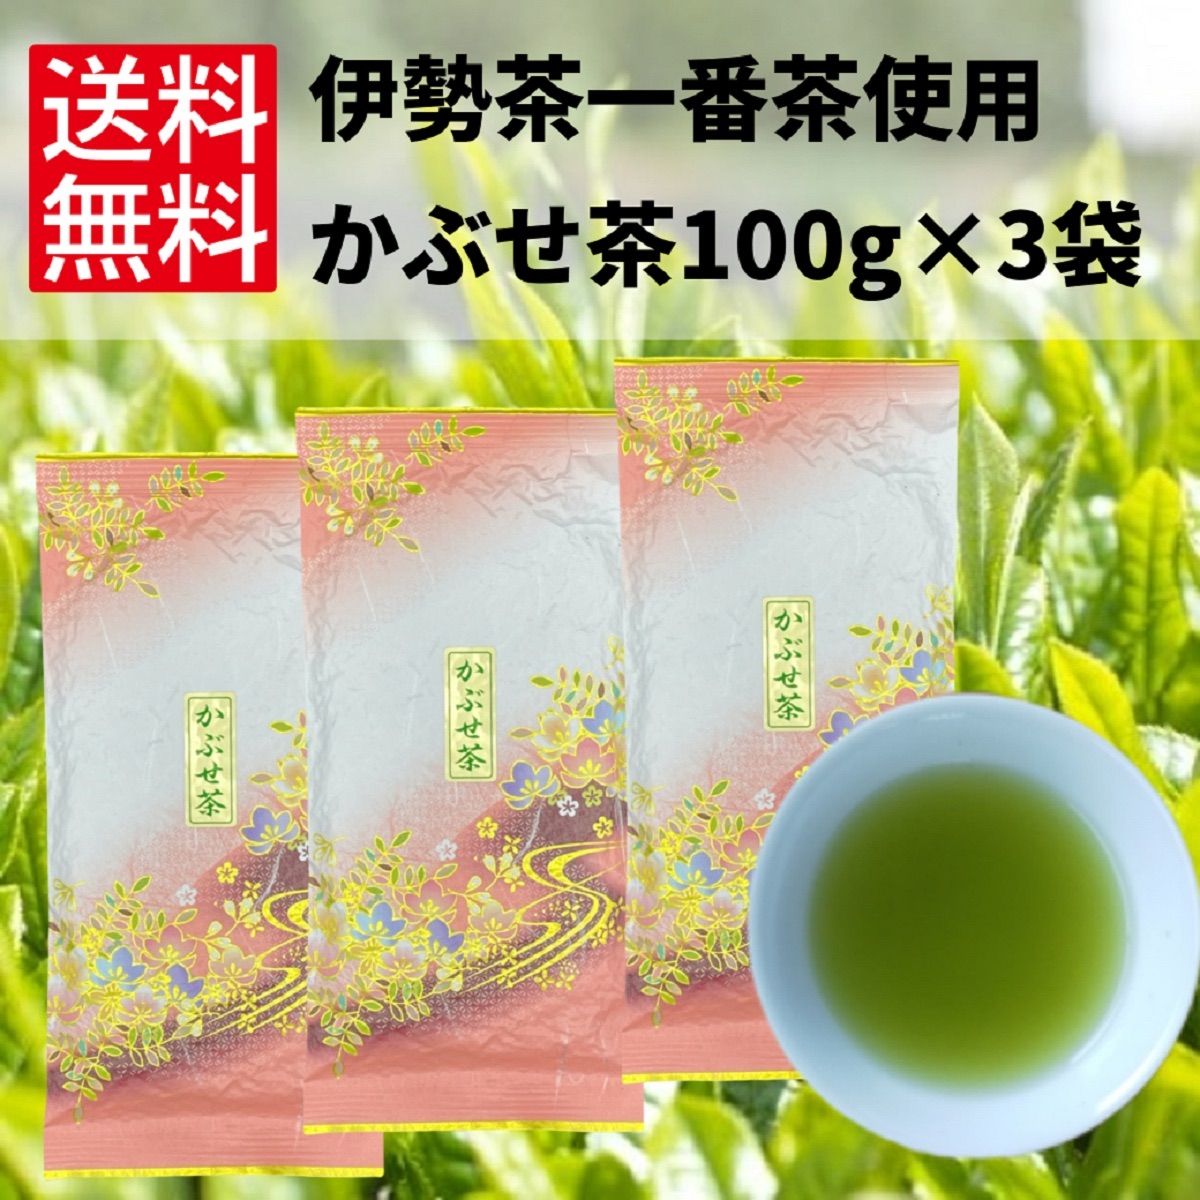 特上かぶせ茶80g、特上かりがね80g、芽茶80g セット 日本茶 茶葉 緑茶 特上かぶせ茶 一番茶 80g 3本セット 